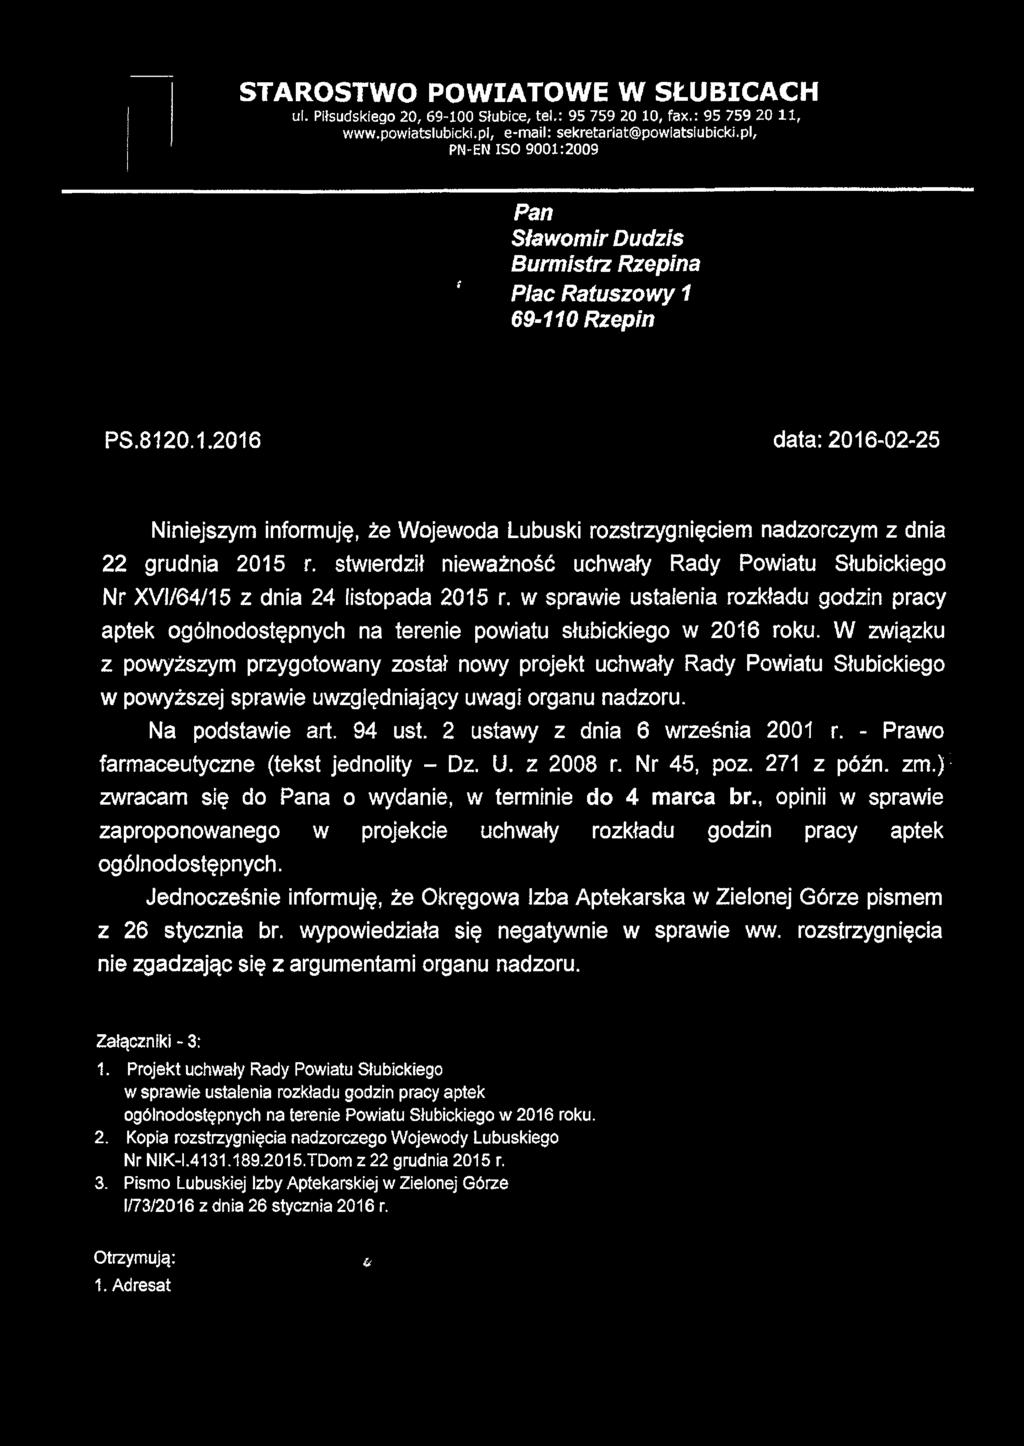 STAROSTWO POWIATOWE W SŁUBICACH ul. Piłsudskiego 20, 69-100 Słubice, tel.: 95 759 20 10, fax.: 95 759 20 11, www.powiatslubicki.pl, e-mail: sekretariat@powiatsiubicki.